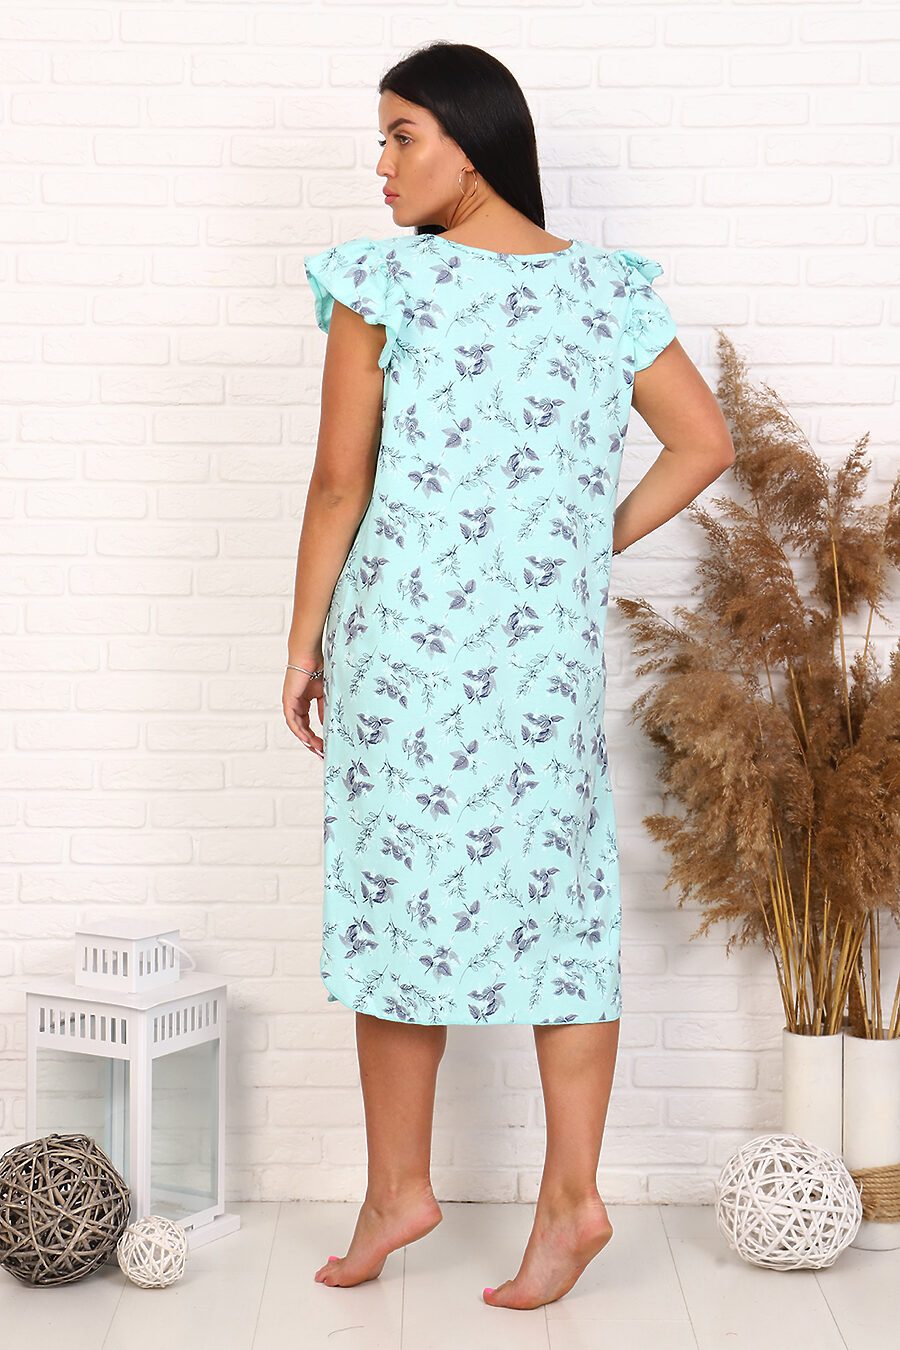 Сорочка Скай для женщин НАТАЛИ 664808 купить оптом от производителя. Совместная покупка женской одежды в OptMoyo